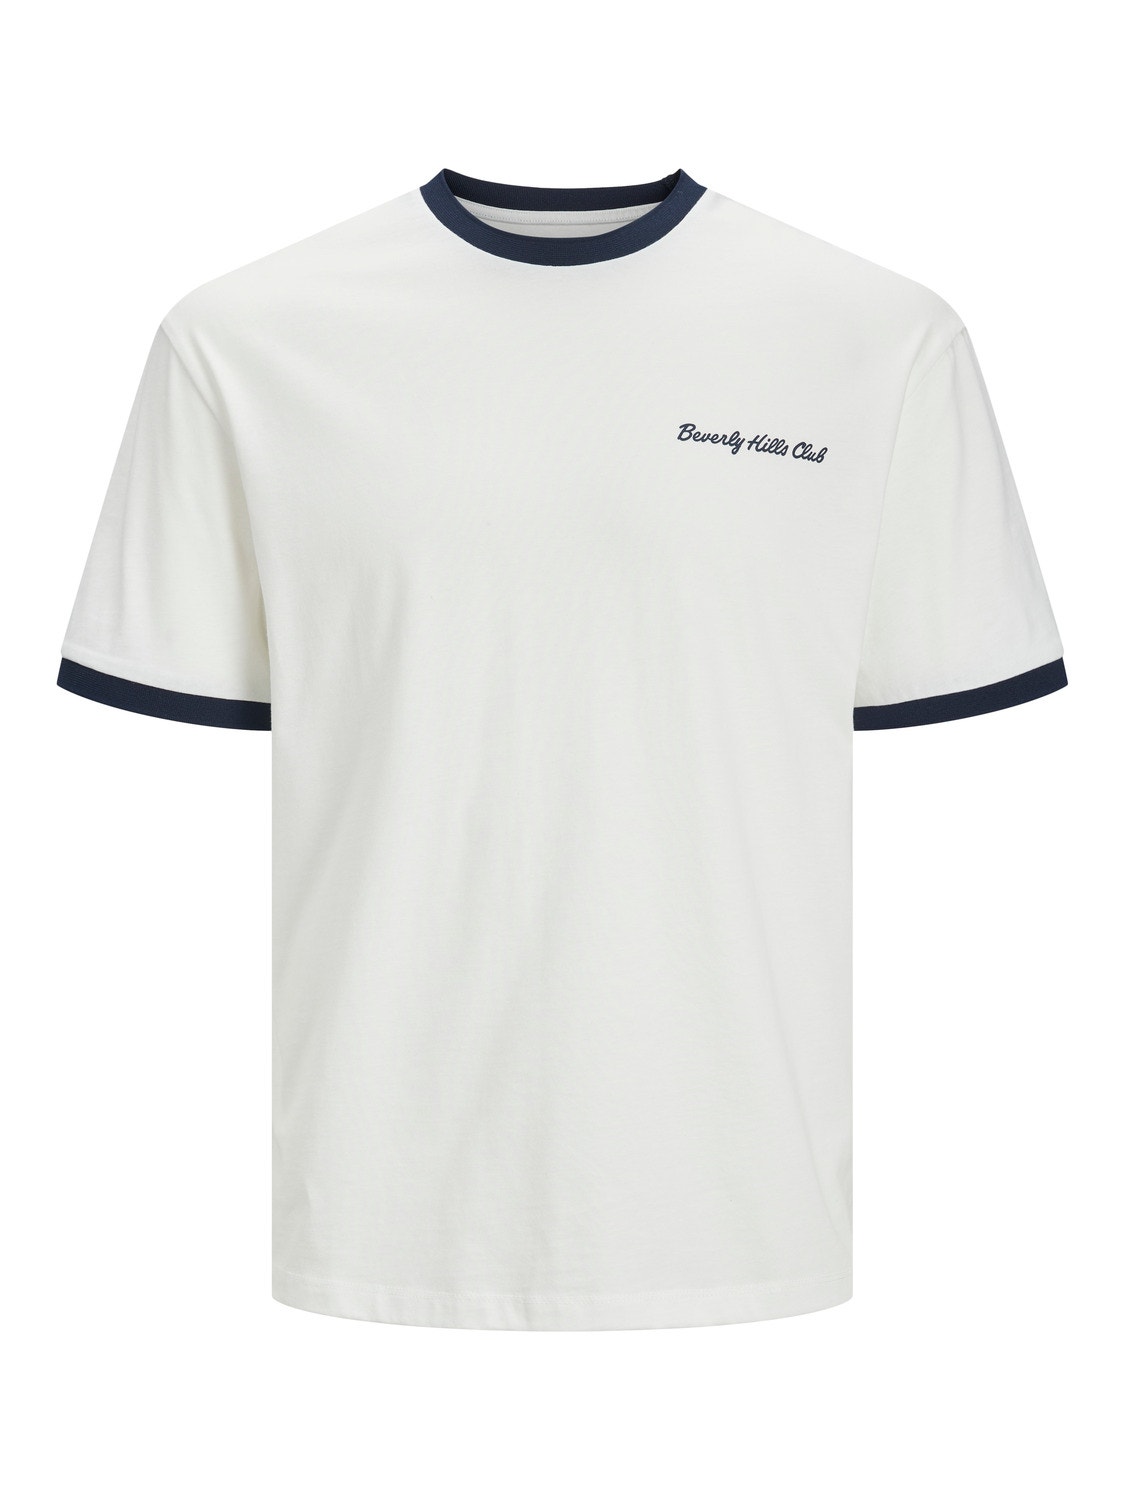 Jack & Jones T-shirt Imprimé Col rond -Cloud Dancer - 12237453